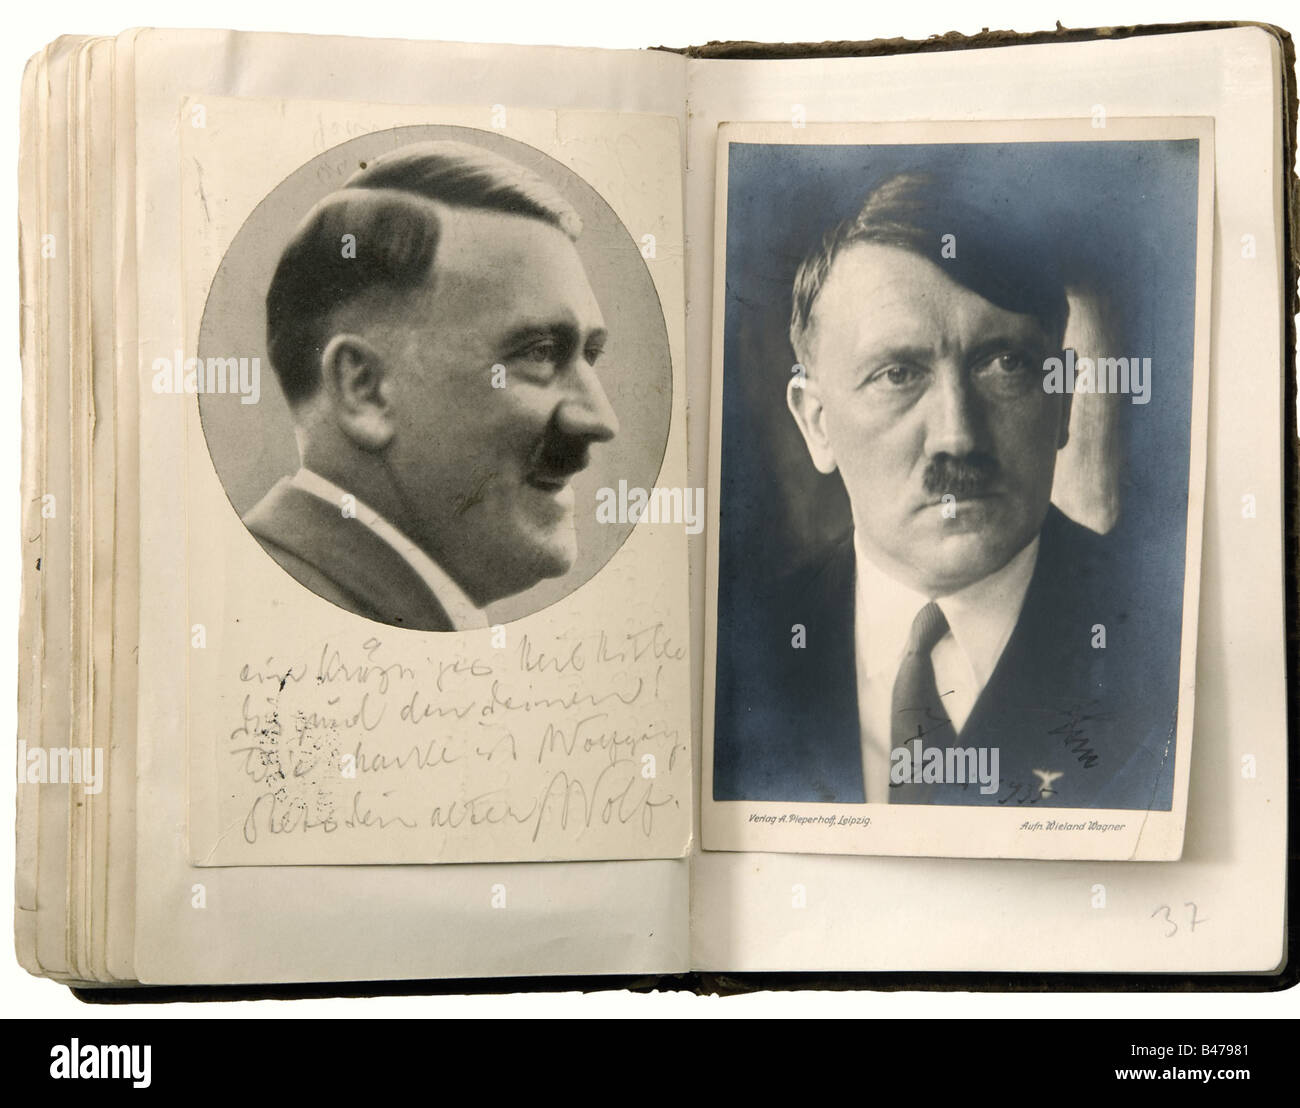 Harald Lindenberg - un album autographe, un album de souvenirs de la période 1926 à 1939, commençant par trois photos d'aviateurs de la première Guerre mondiale et une carte postale de Manfred Baron von Richthofen, signée à l'encre 'Fhr. Von Richthofen Rittmeister', Et 'Geschenk von Onkel Bülow' (Présent de l'oncle Bülow) écrit au dos. L'album se poursuit avec, entre autres : Friedrich Ebert (photo et autographe), Ludendorff (photo et autographe), Gerhart Hauptmann (autographe), John Hagenbeck (photo de journal et autographe), Franz von Epp (photo et autog, Banque D'Images